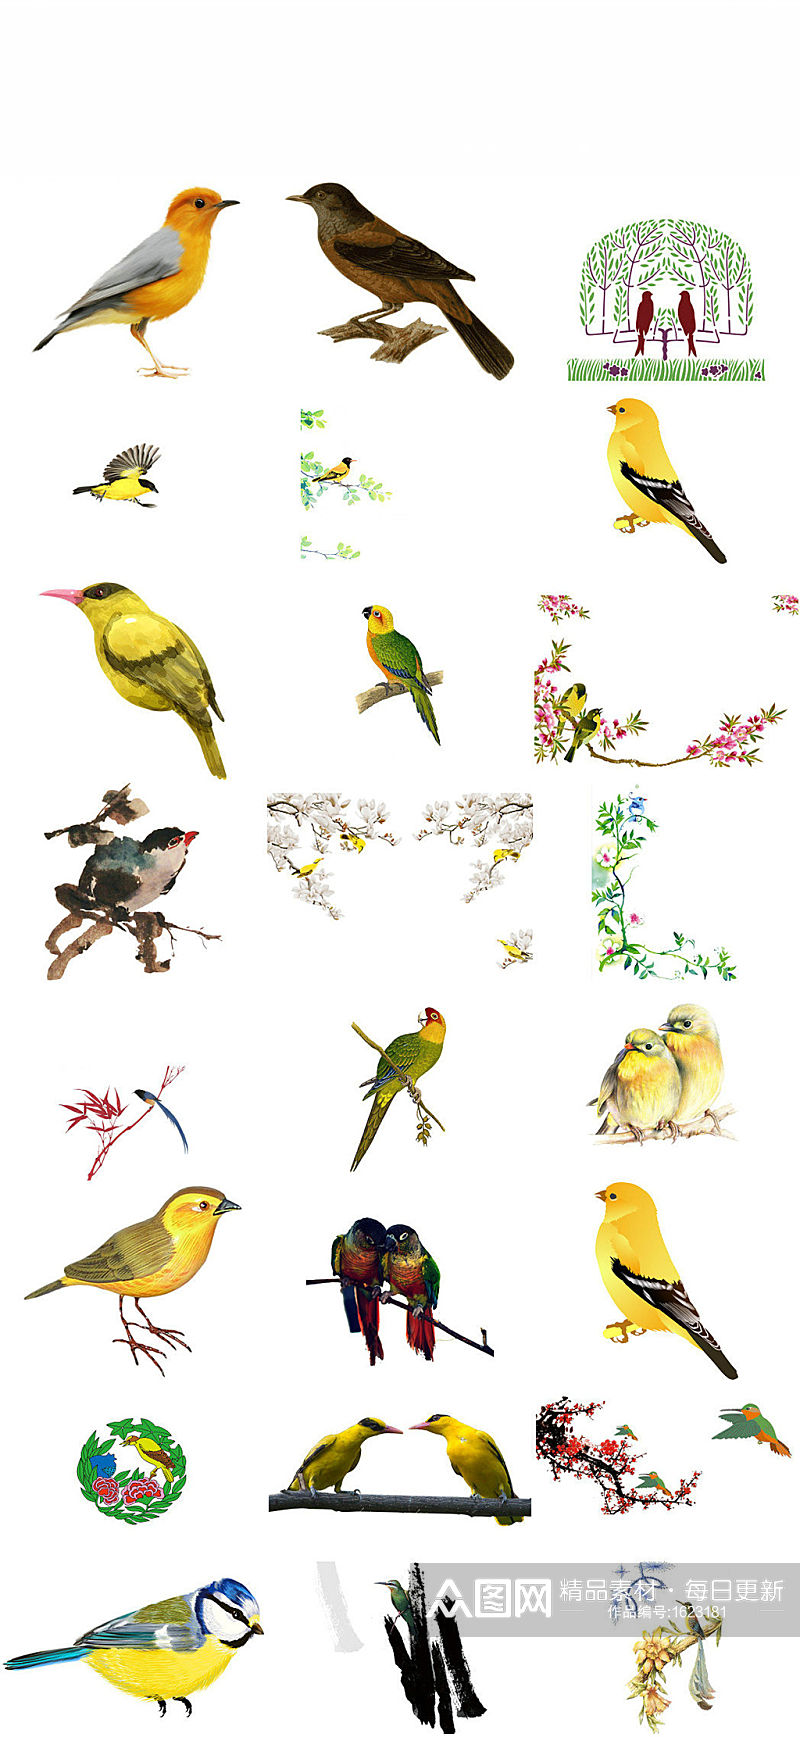 鸟类动物黄鹂ps形象设计素材素材